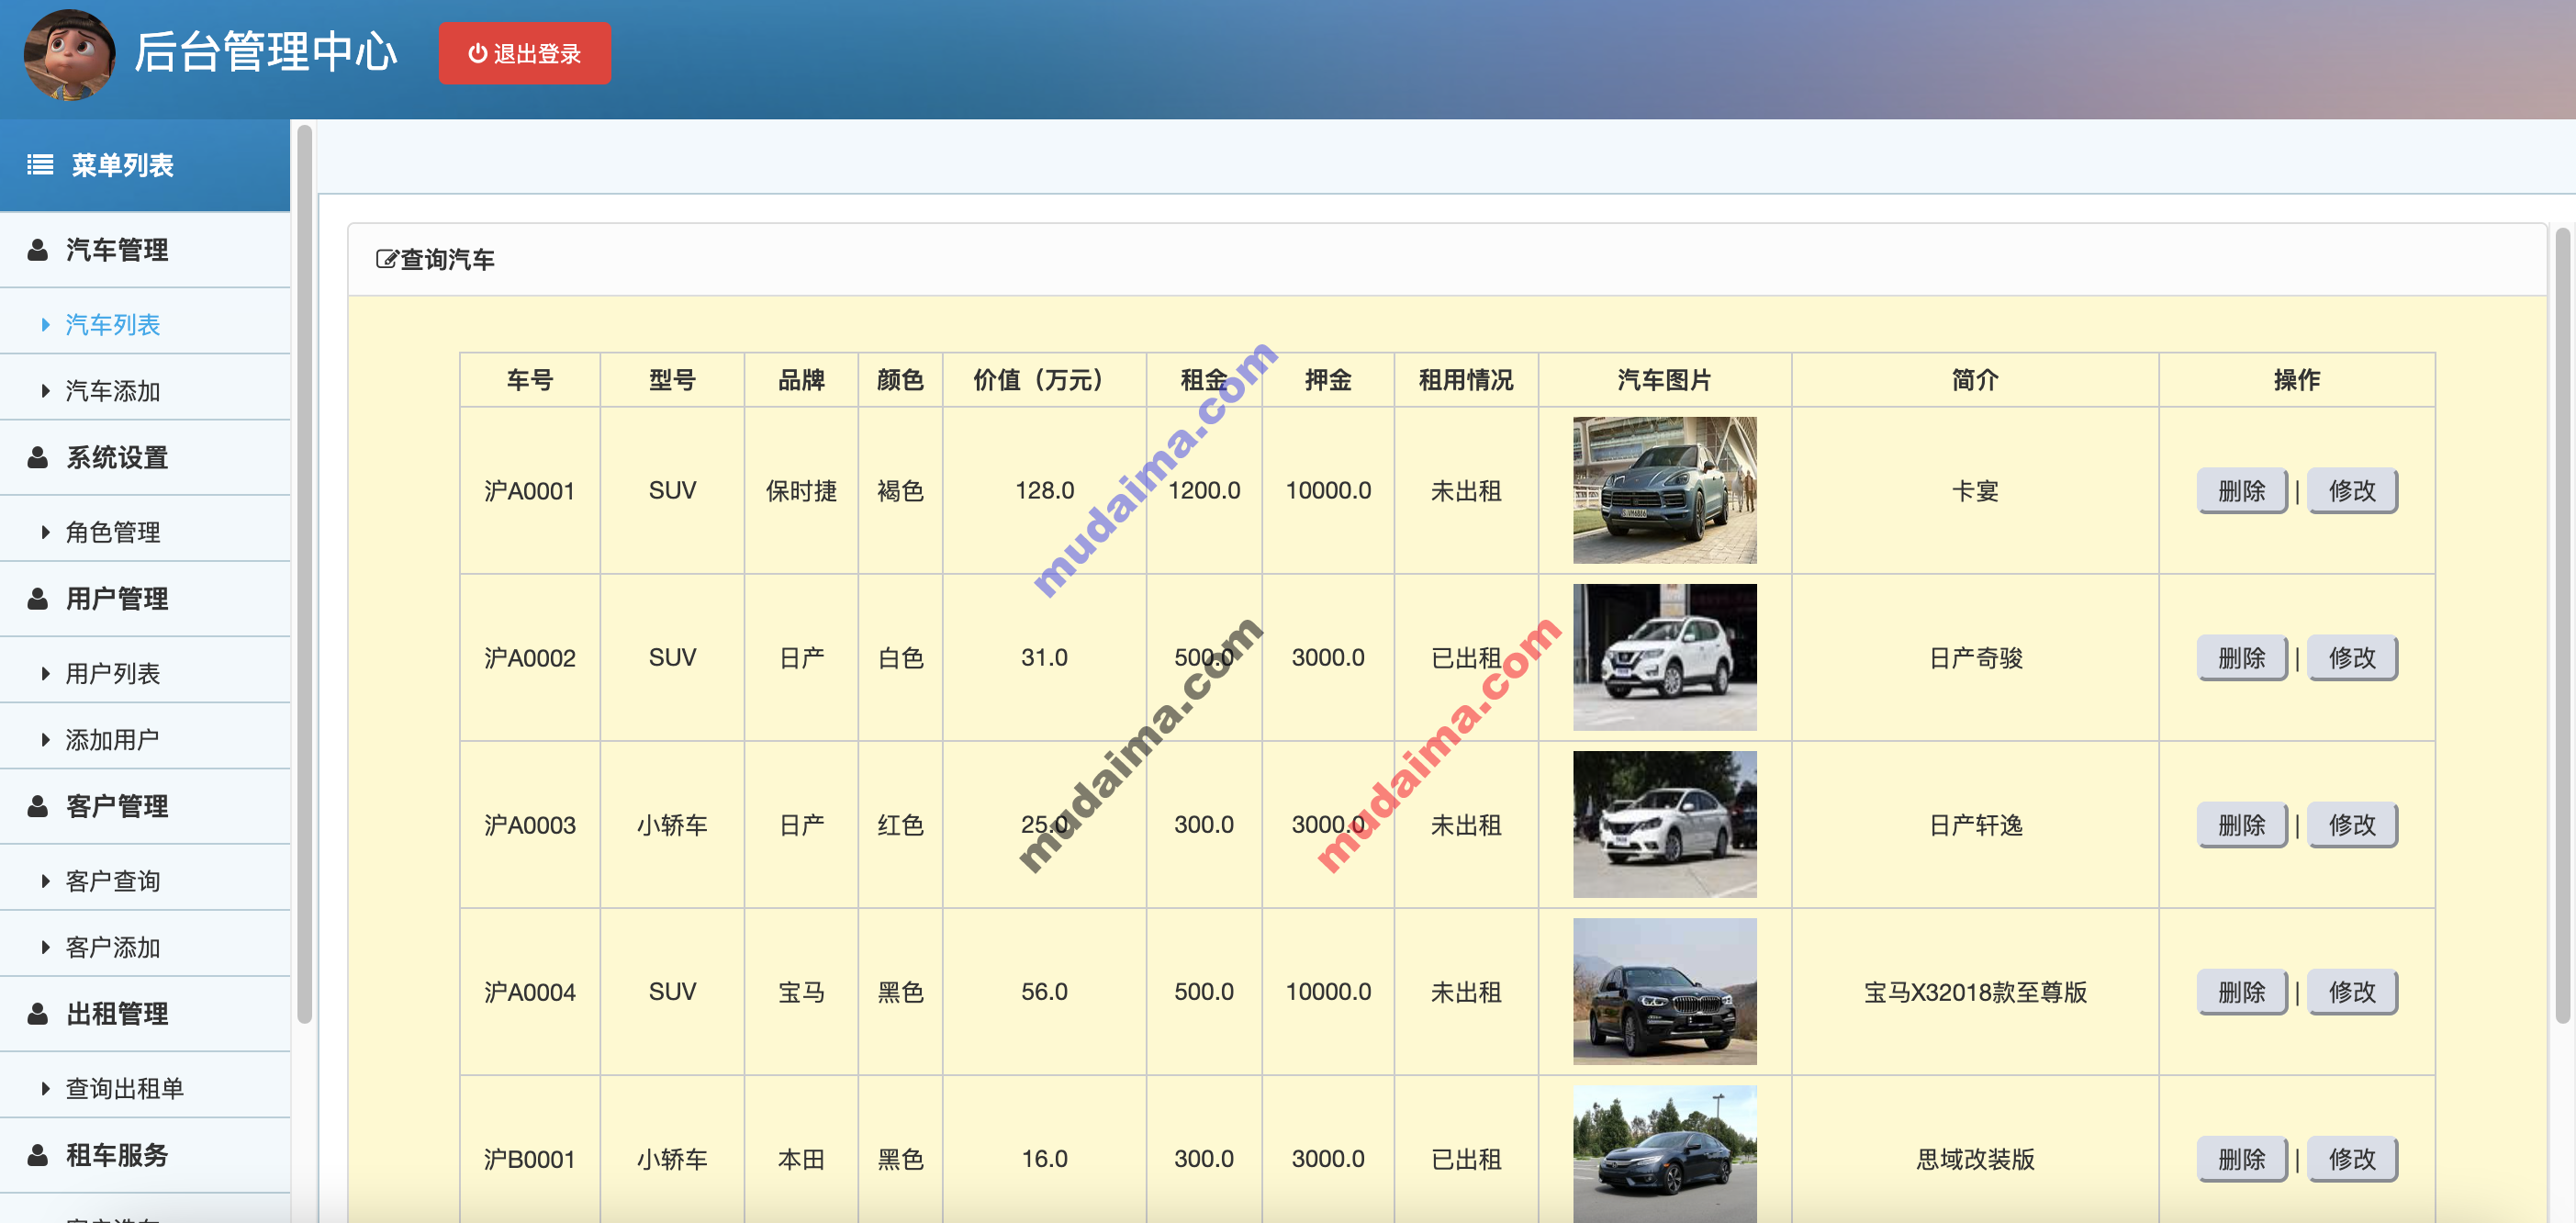 【S038】Java web SSM汽车租赁系统 租车管理系统项目源码 java项目